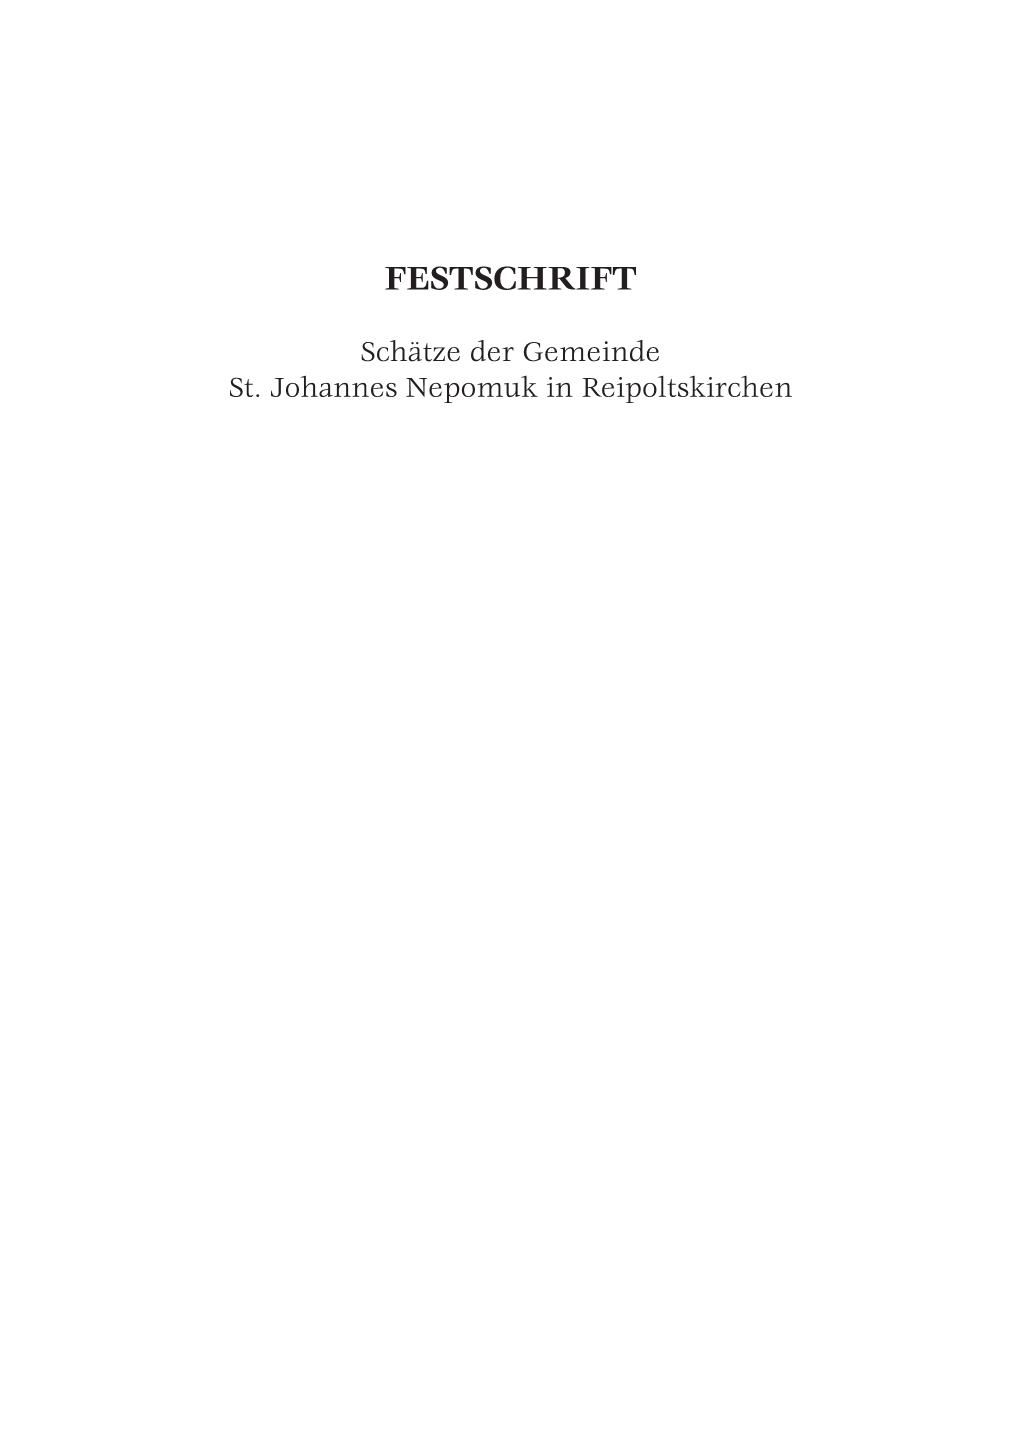 Festschrift Kirchengemeinde Reipoltskirchen